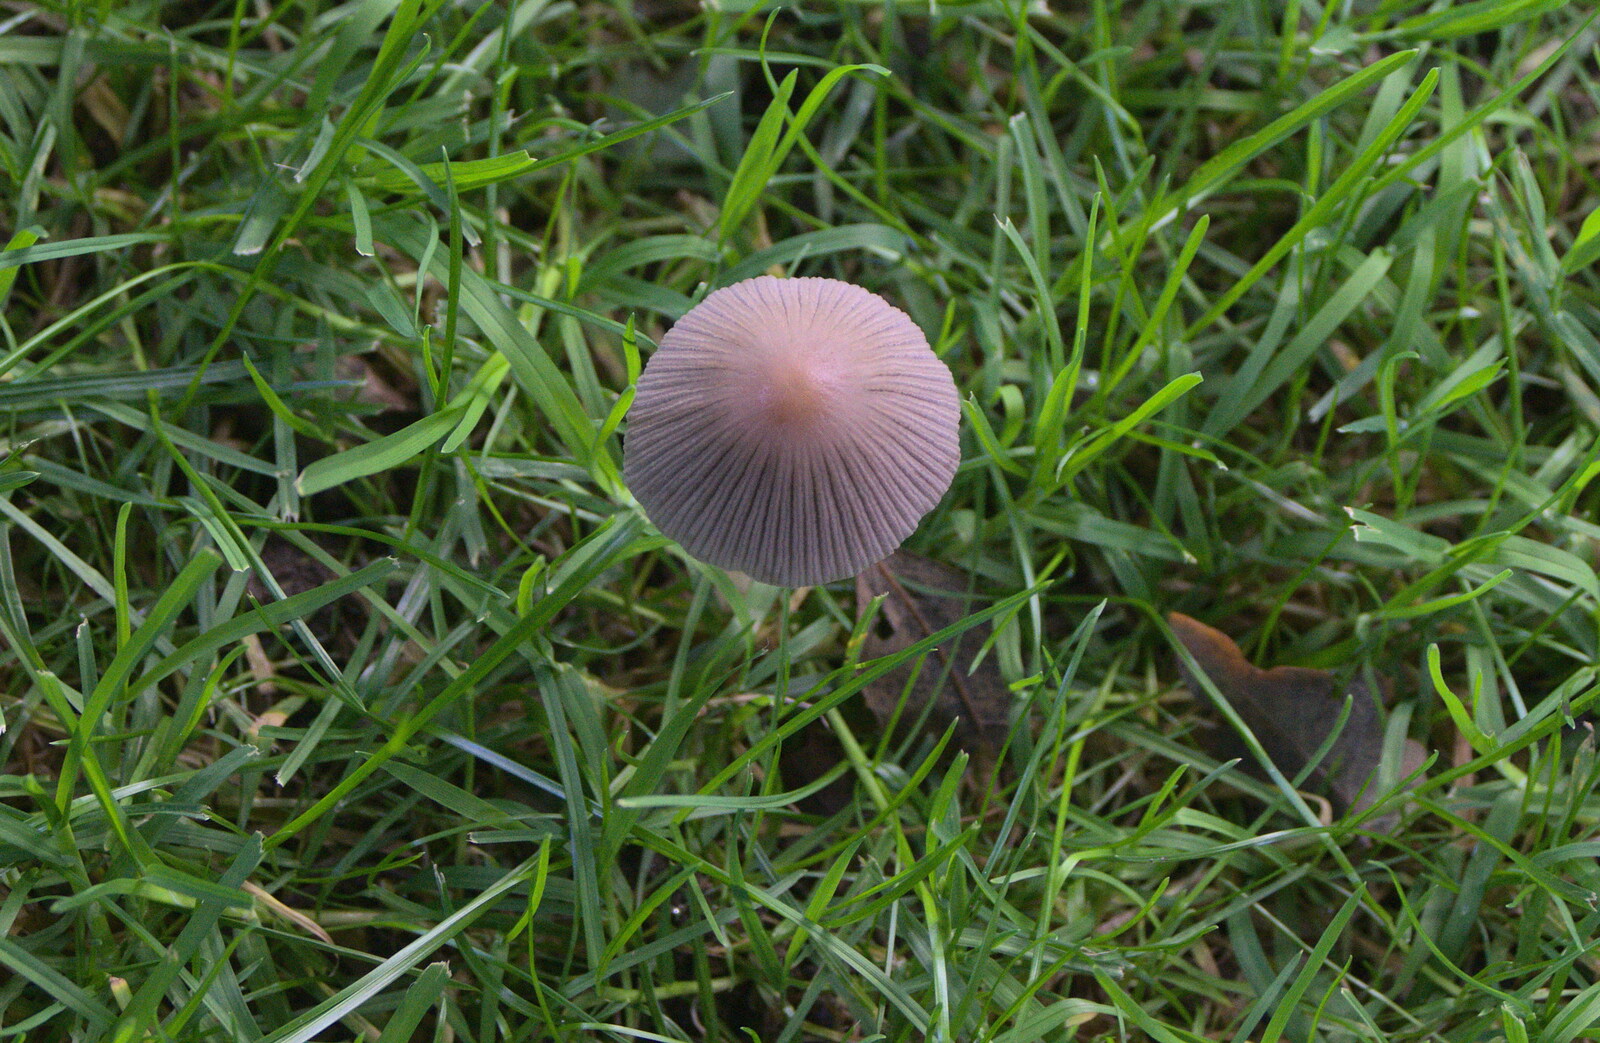 A cool mushroom from Alan Bloom's Gardens, Bressingham, Norfolk - 6th October 2012